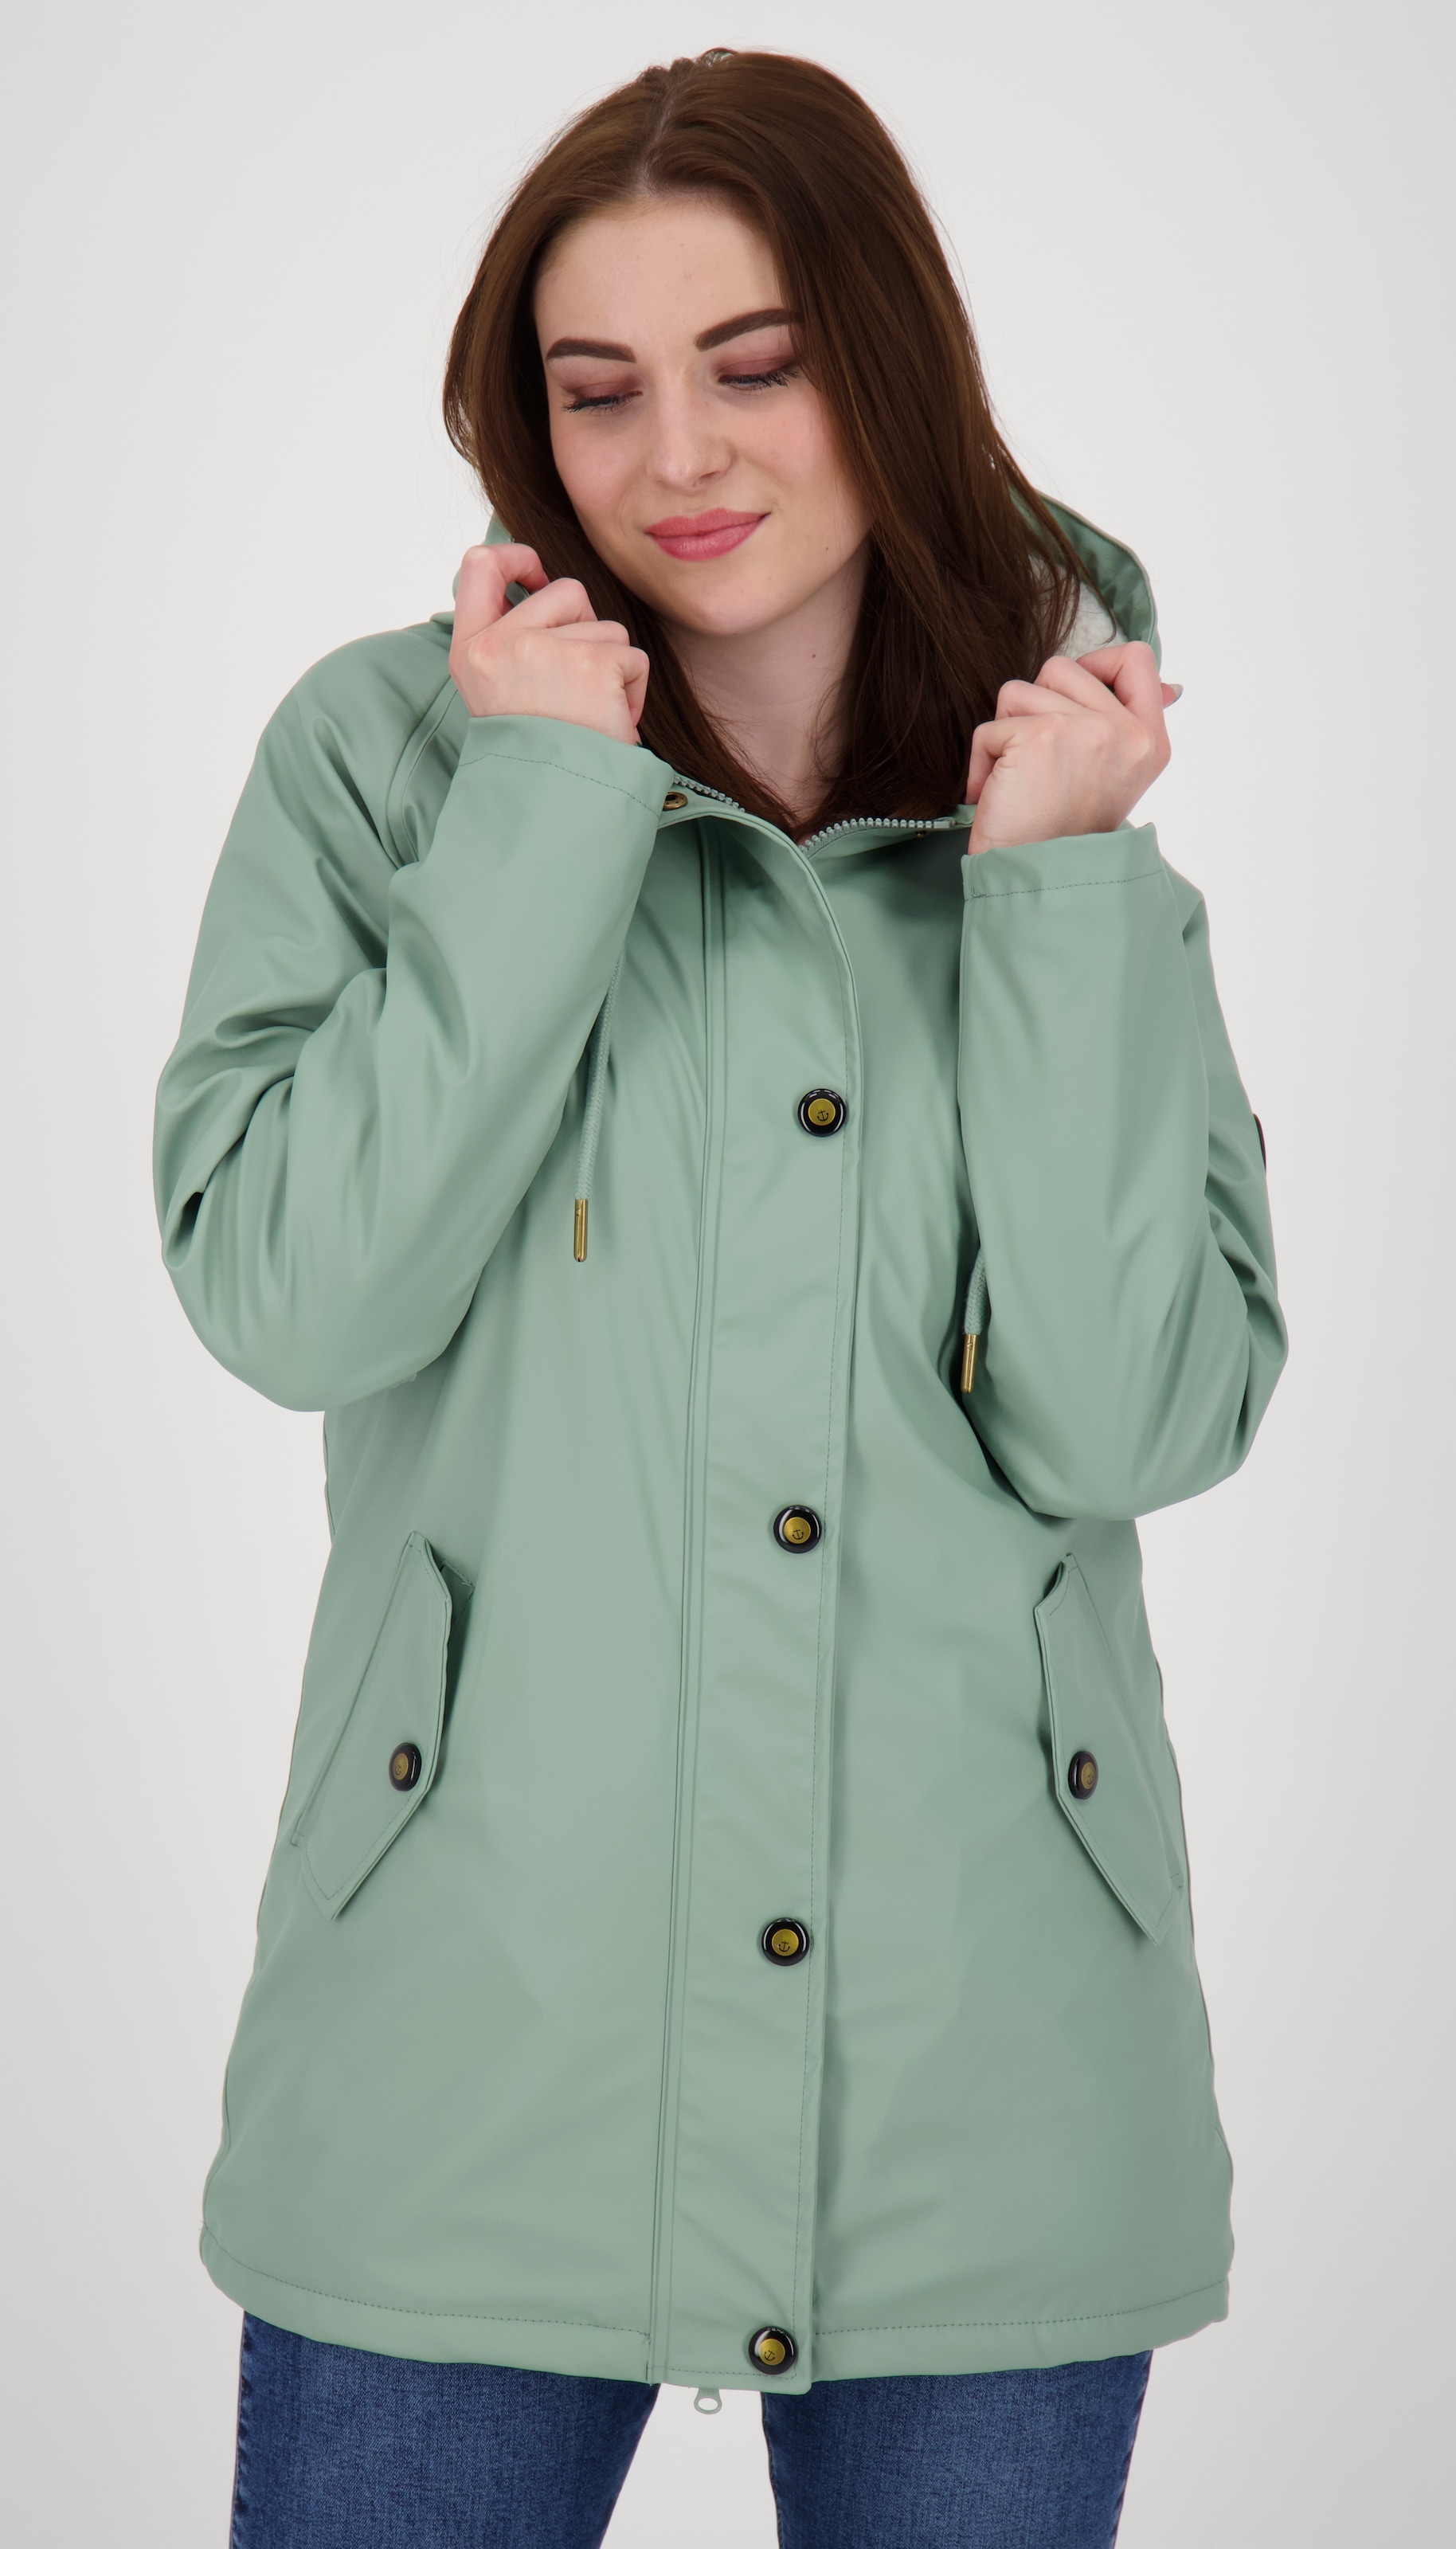 Regenmantel für Damen online kaufen Regenmäntel bei OTTO | jetzt